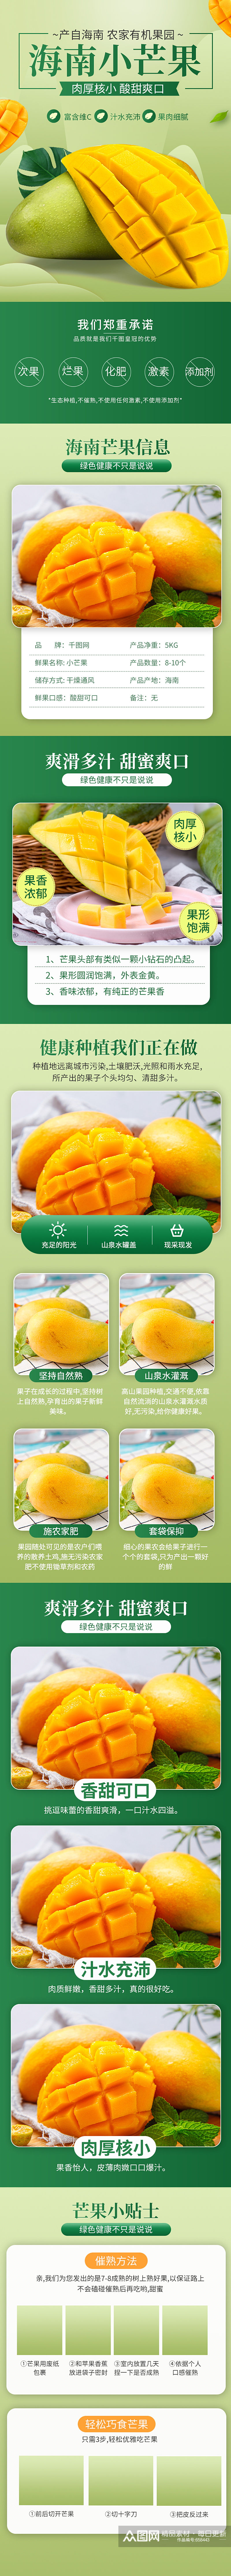 苹果芒果西瓜桃子西柚荔枝水果蔬菜食品详情素材